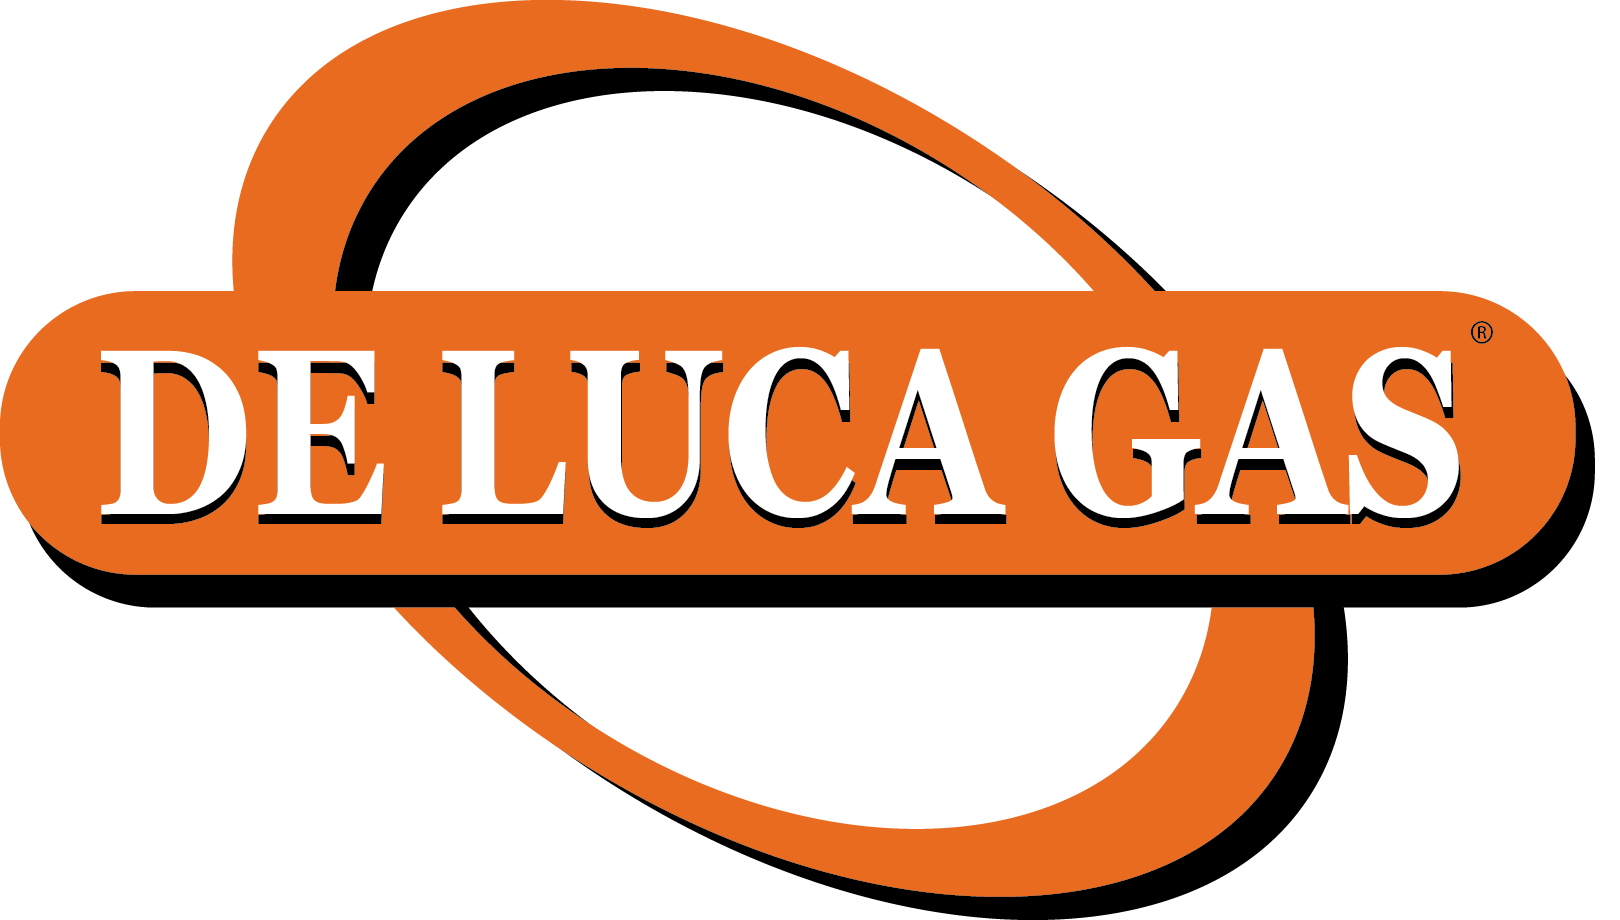 Deluca Gas